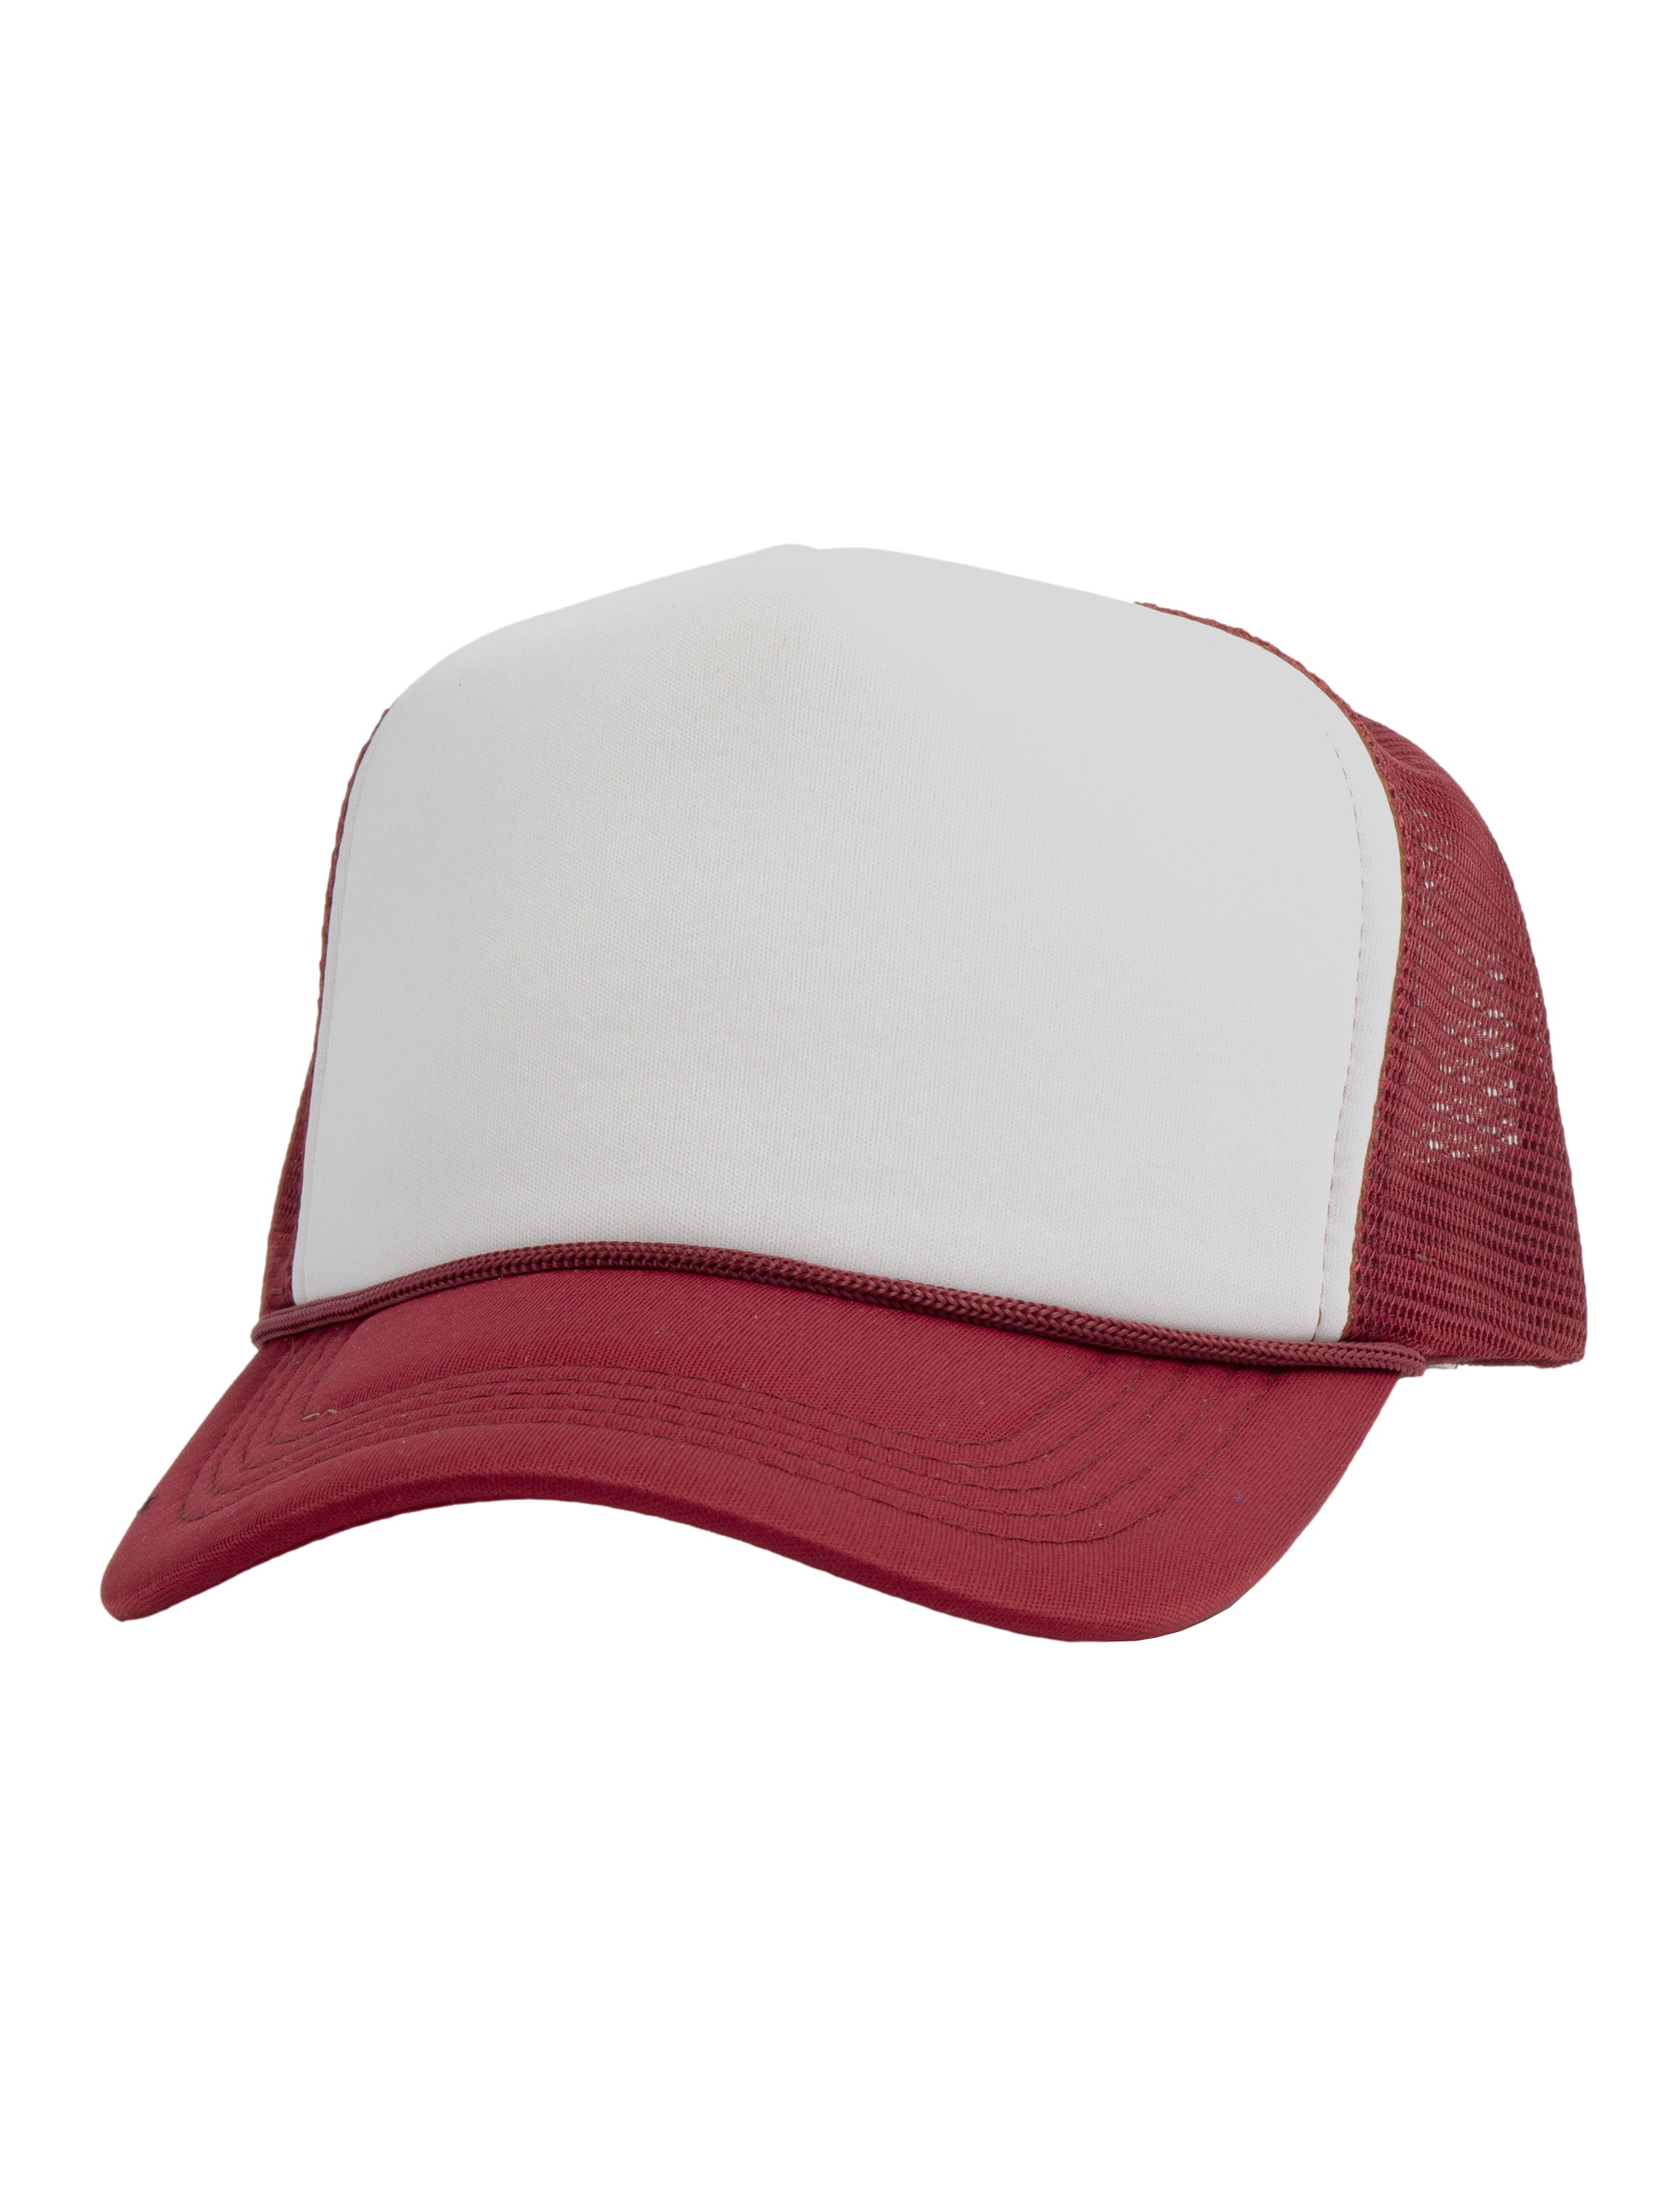 Top Headwear Blank Trucker Hat - Mens Trucker Hats Foam Mesh Snapback  White/Black 